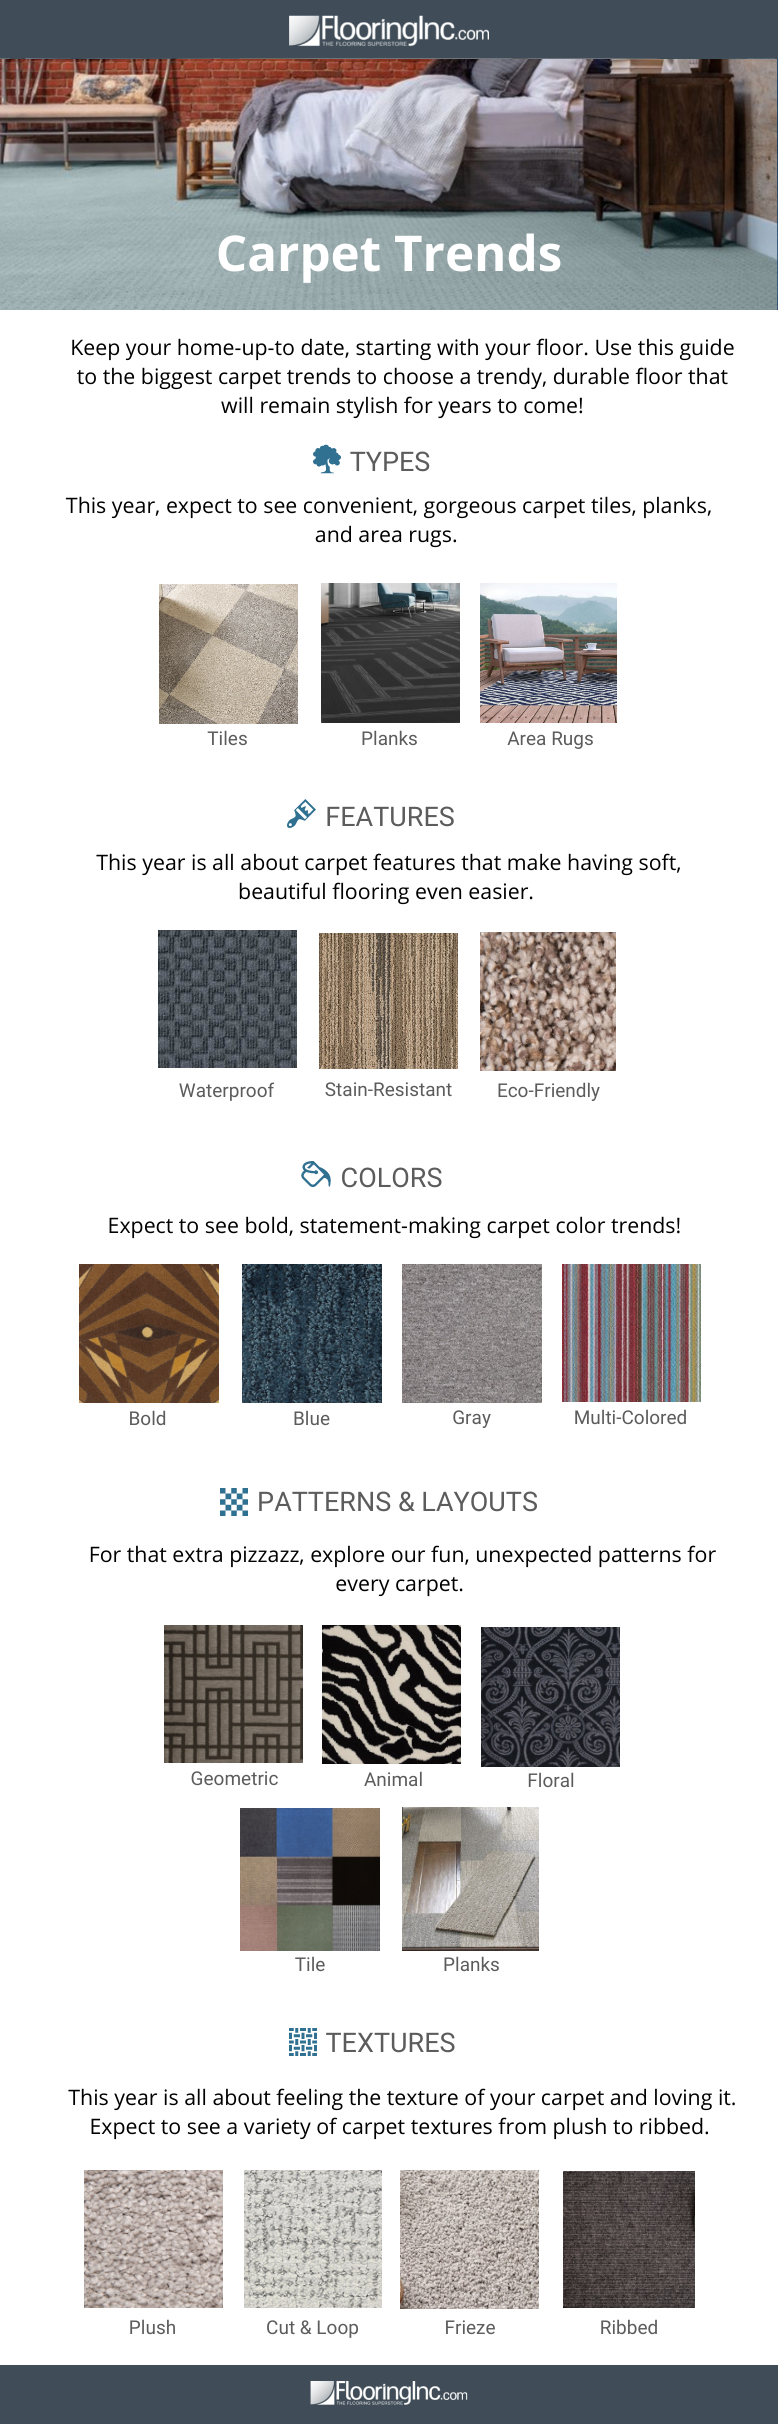 Carpet Flooring Trends 1 